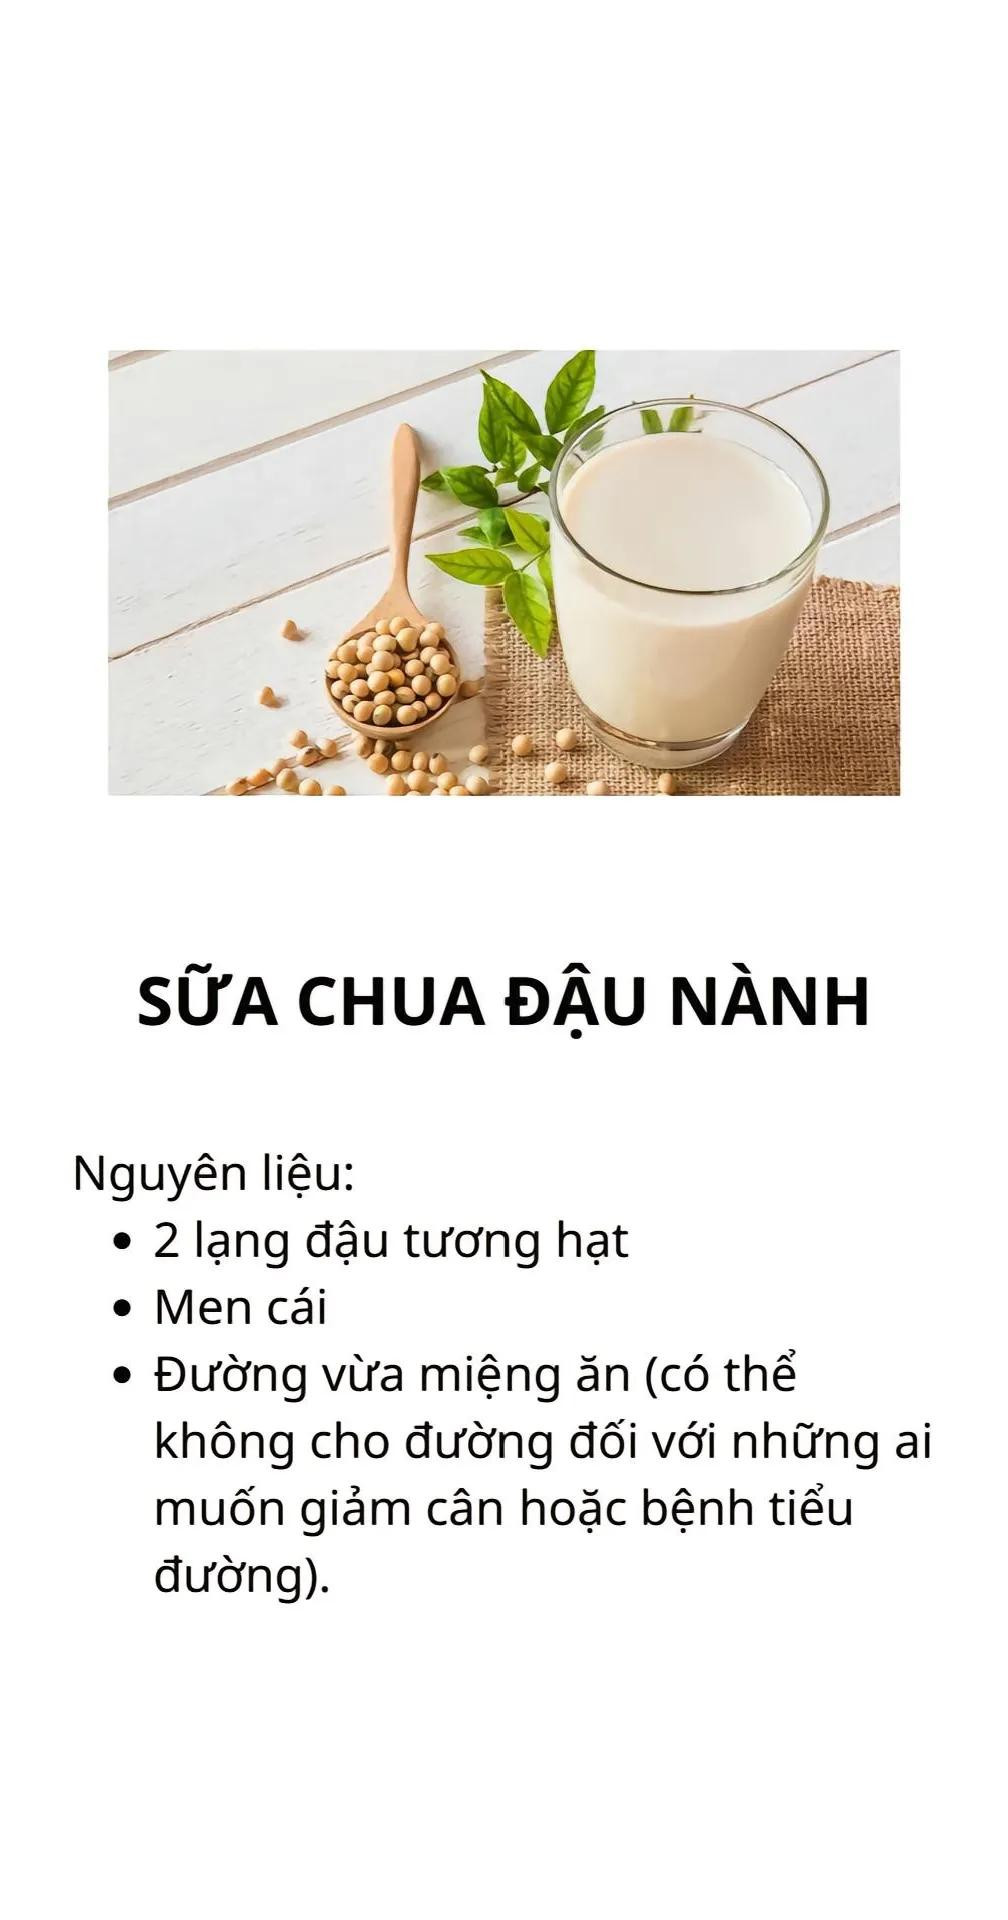 5 công thức làm sữa chua tại nhà ngon và đơn giản. sữa chua mit, sưa chua truyền thống, sữa chua dẻo cacao, sữa chua đậu nành, sữa chua chanh dừa.